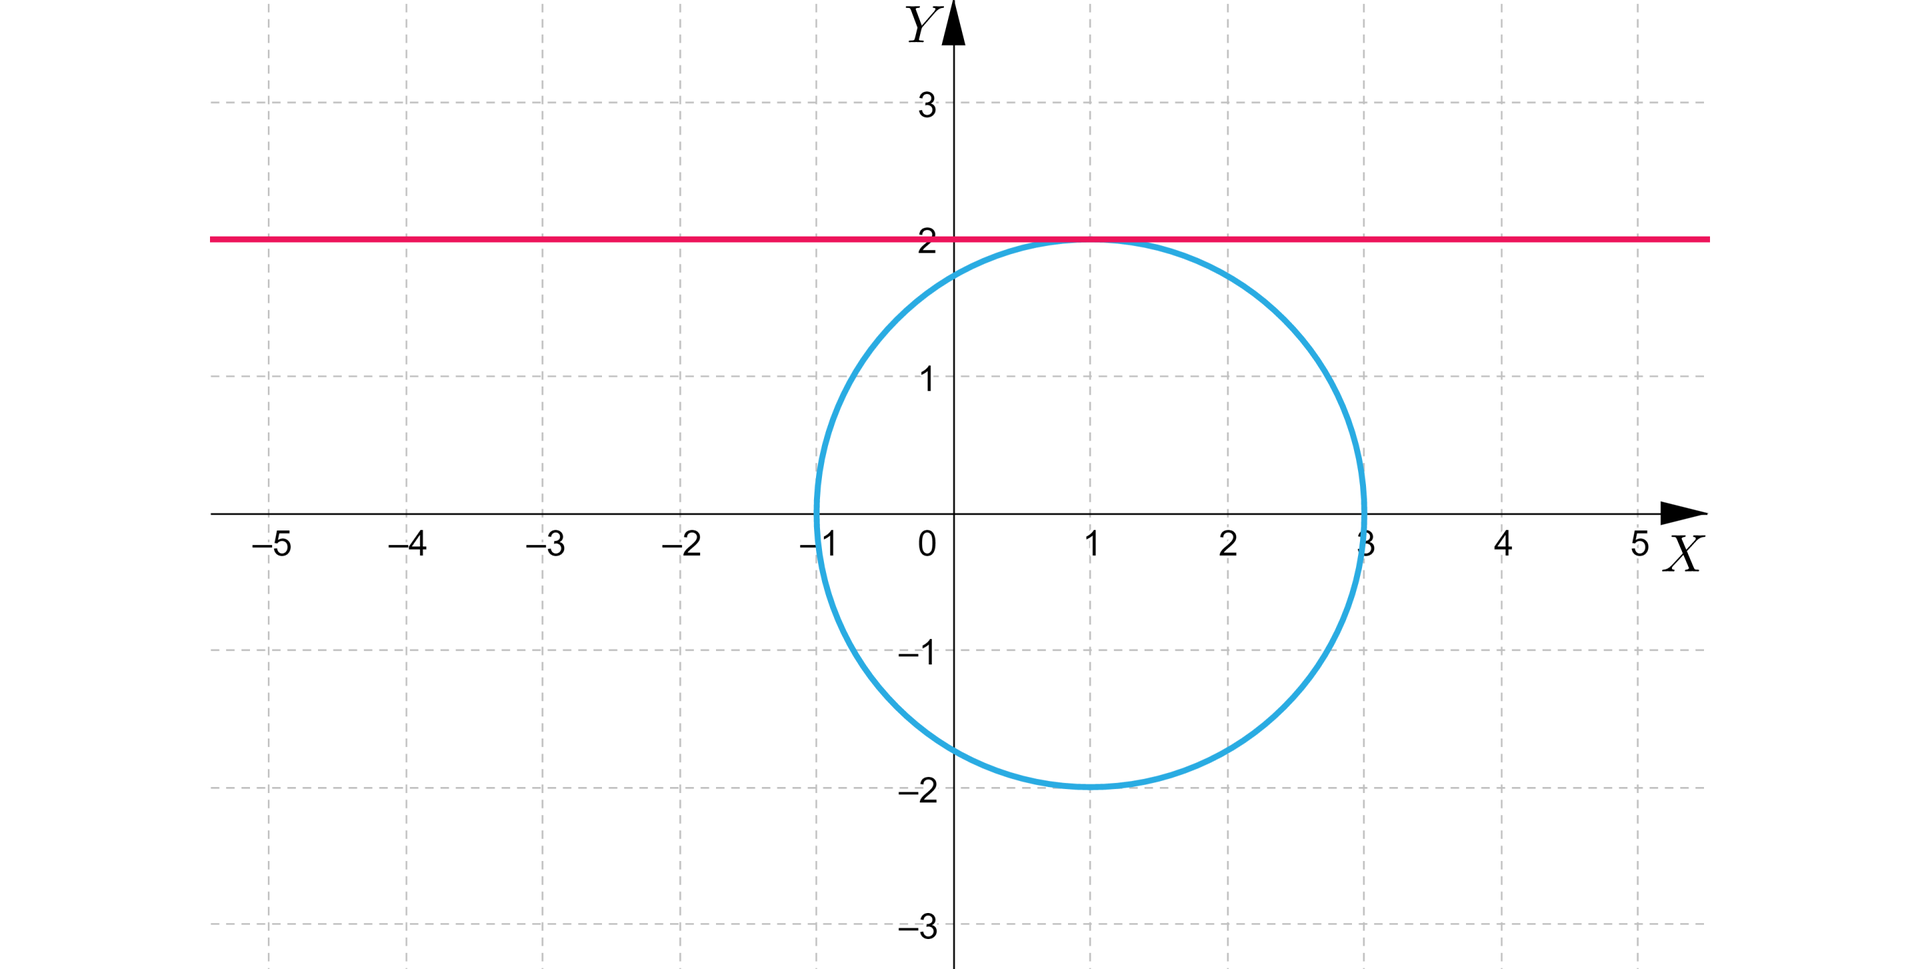 Ilustracja przedstawia układ współrzędnych z poziomą osią X od minus pięciu do pięciu oraz z pionową osią Y od minus trzech do trzech. Na płaszczyźnie wykreślono okrąg o środku w punkcie nawias 1 przecinek 0 zamknięcie nawiasu i o promieniu o długości dwa. Nad okręgiem narysowano poziomą styczną do okręgu. Punkt styczności ma współrzędne nawias 1 przecinek 2 zamknięcie nawiasu. 